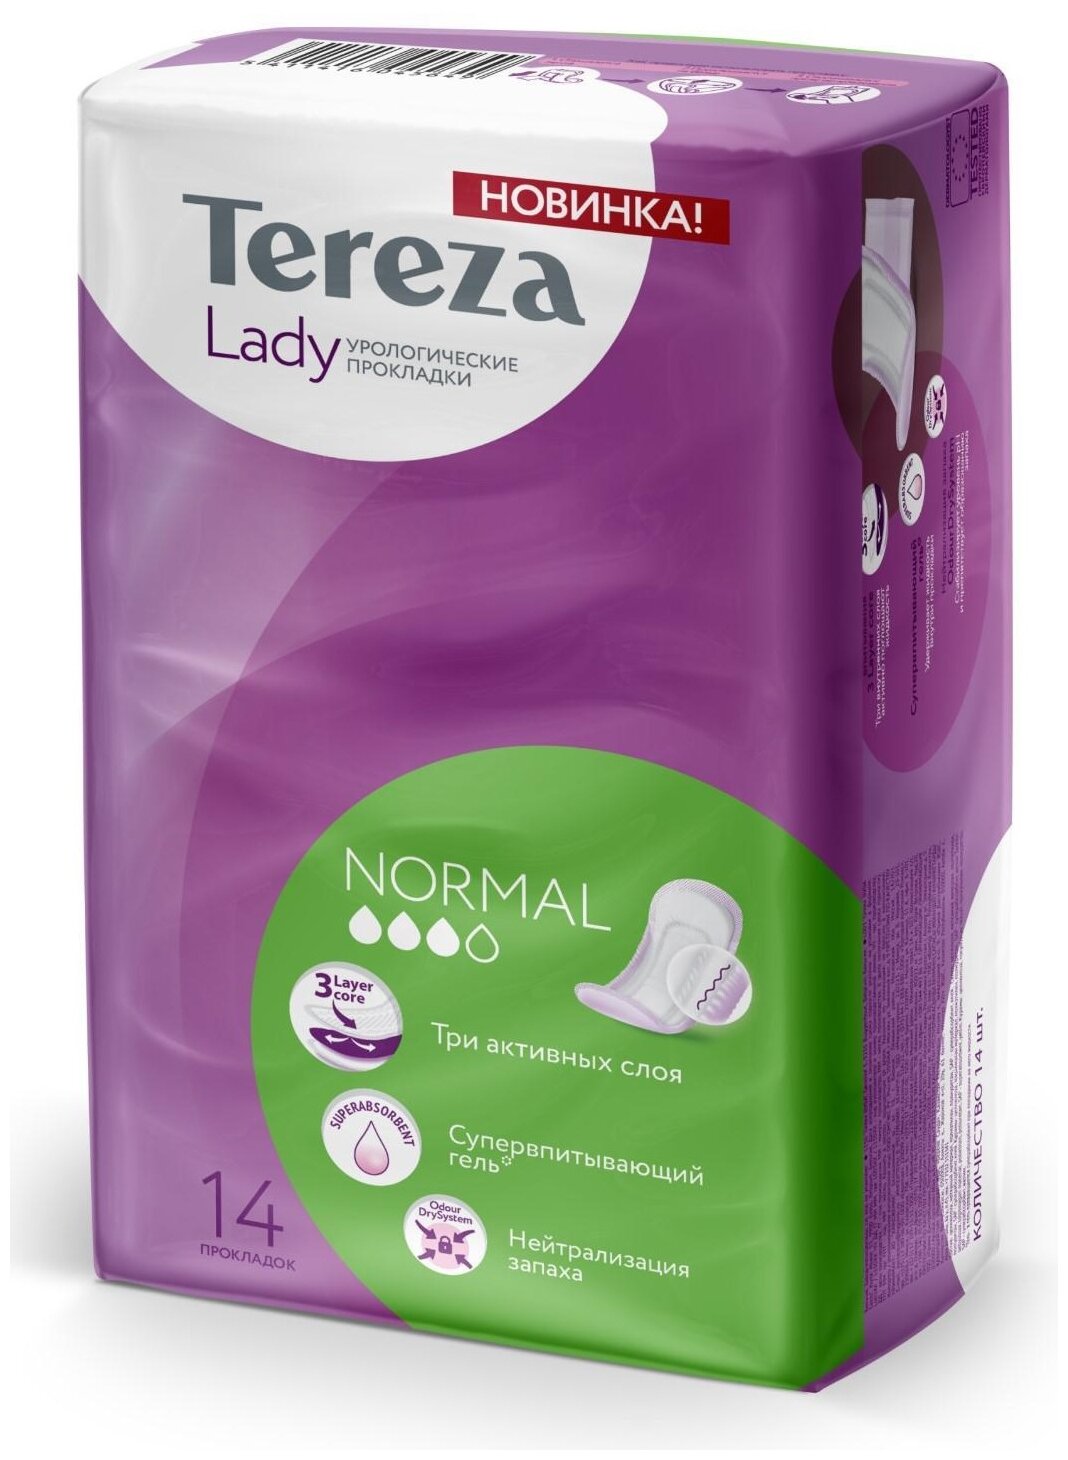 Урологические прокладки TerezaMed впитывающие для женщин Lady Normal